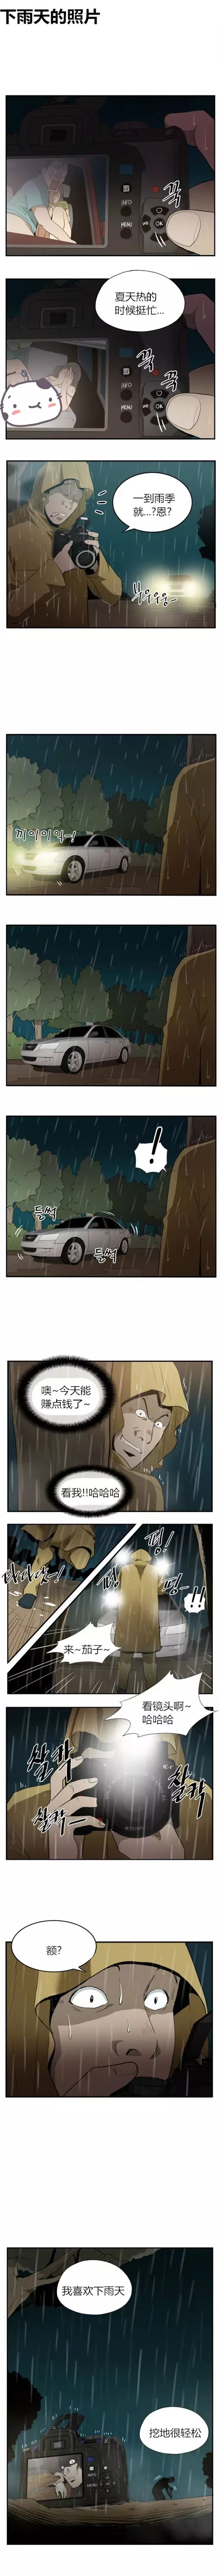 下雨天偷拍汽车情侣的下场 |内涵漫画《下雨天的照片》 - 2